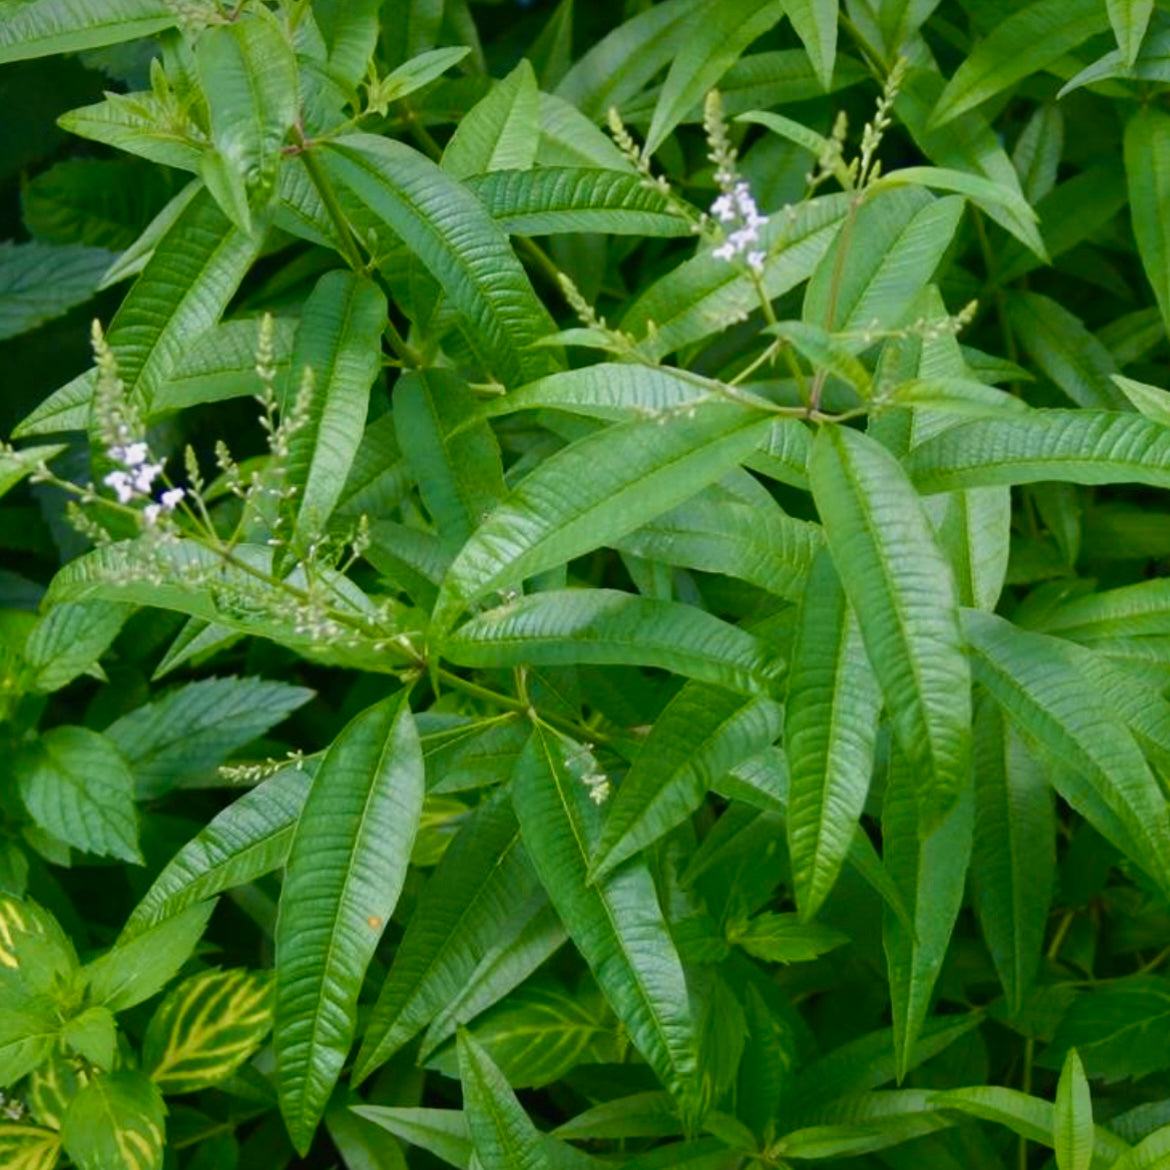 Lippia citriodora  - comm. Lemon Verbena, syn. Aloysia triphylla